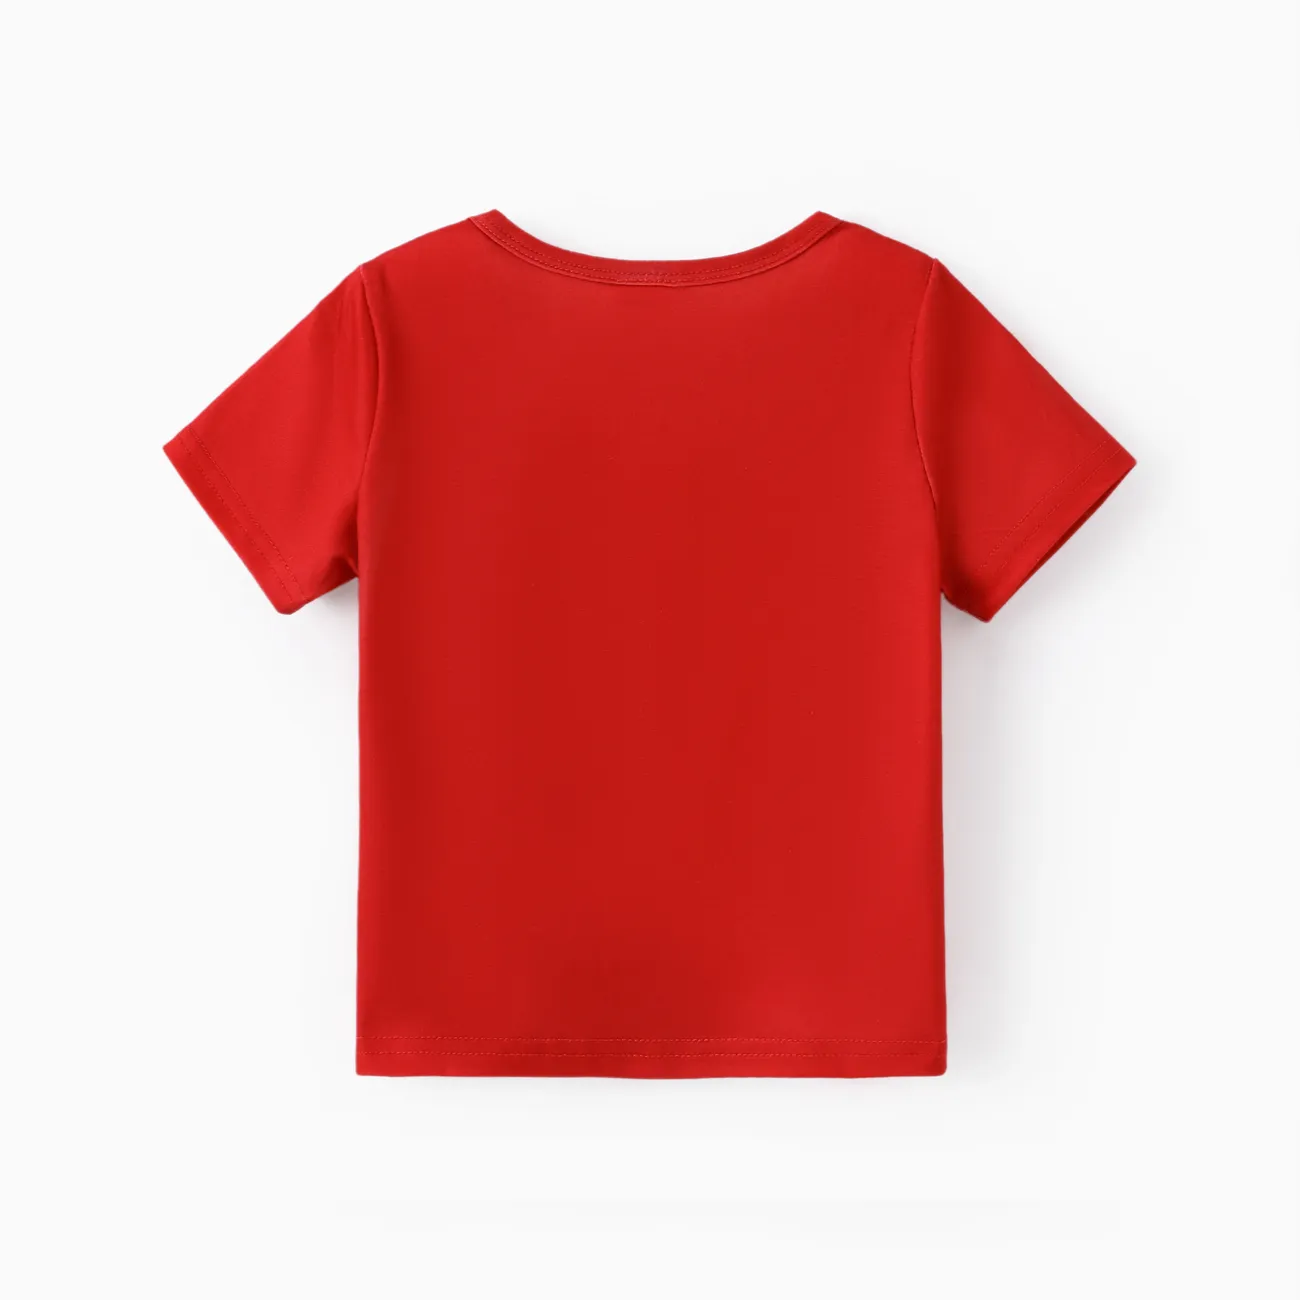 Kleinkinder Jungen Kindlich Kurzärmelig T-Shirts rot big image 1